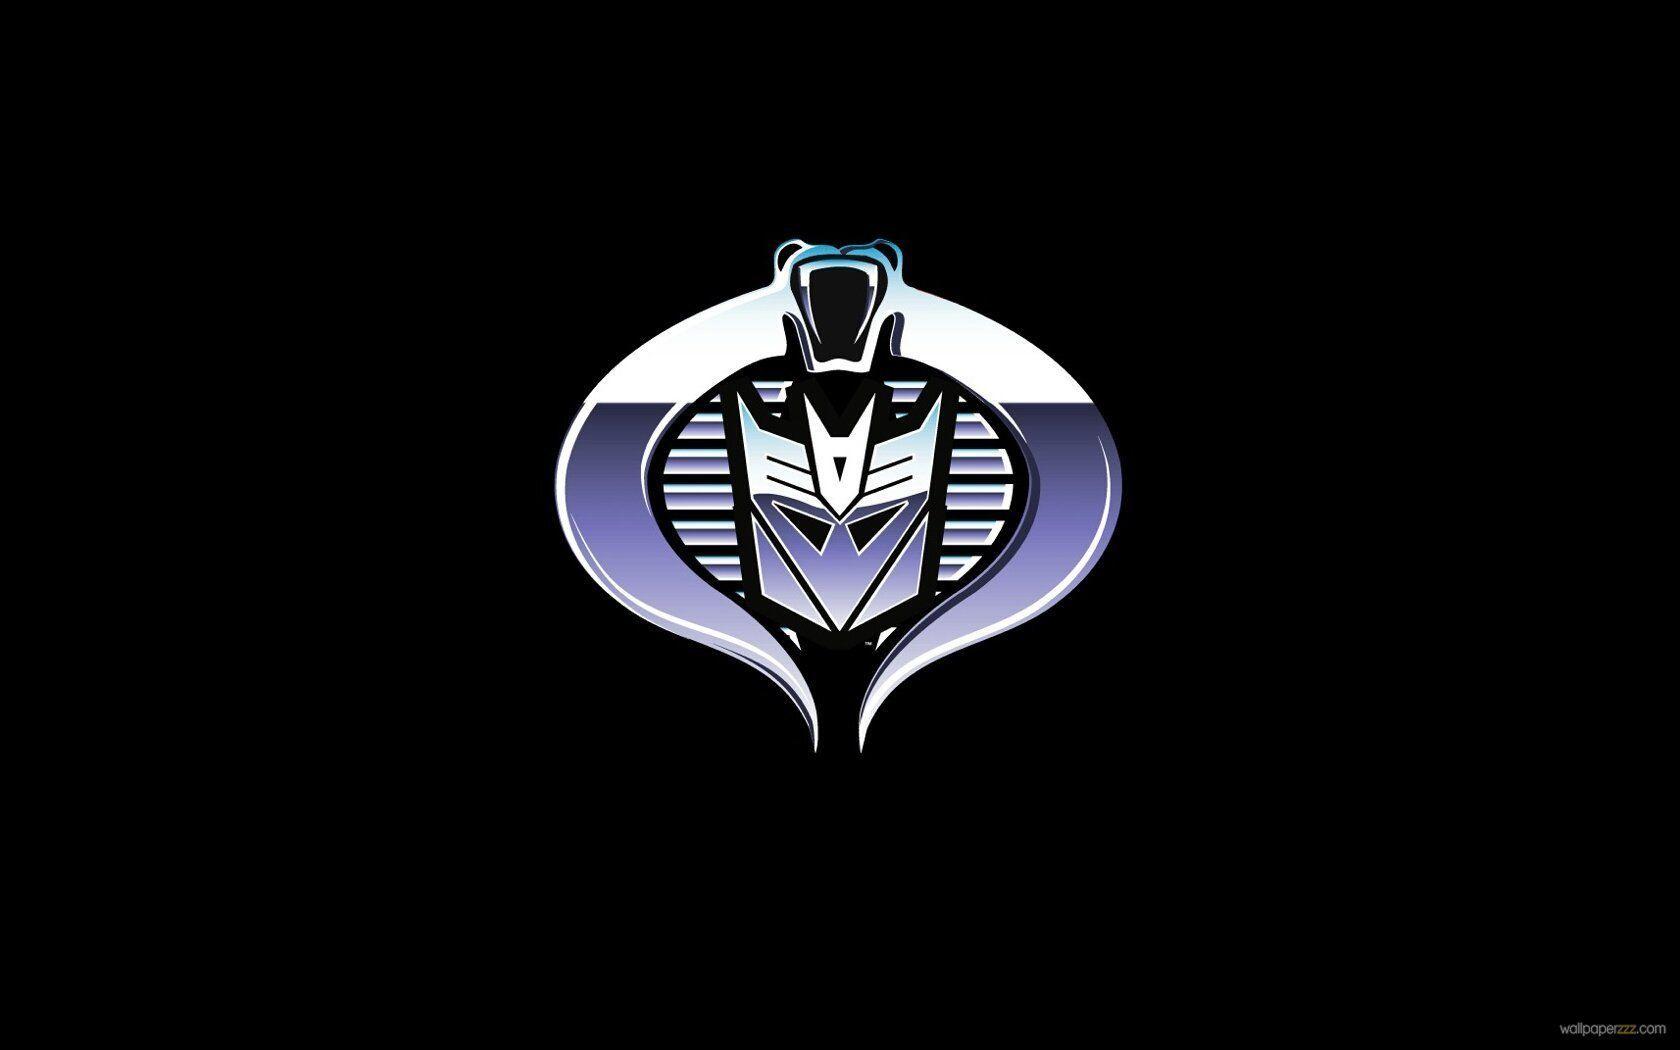 Cobra Decepticon Logo - Decepticons And Cobra. Download Decepticon Cobra Widescreen